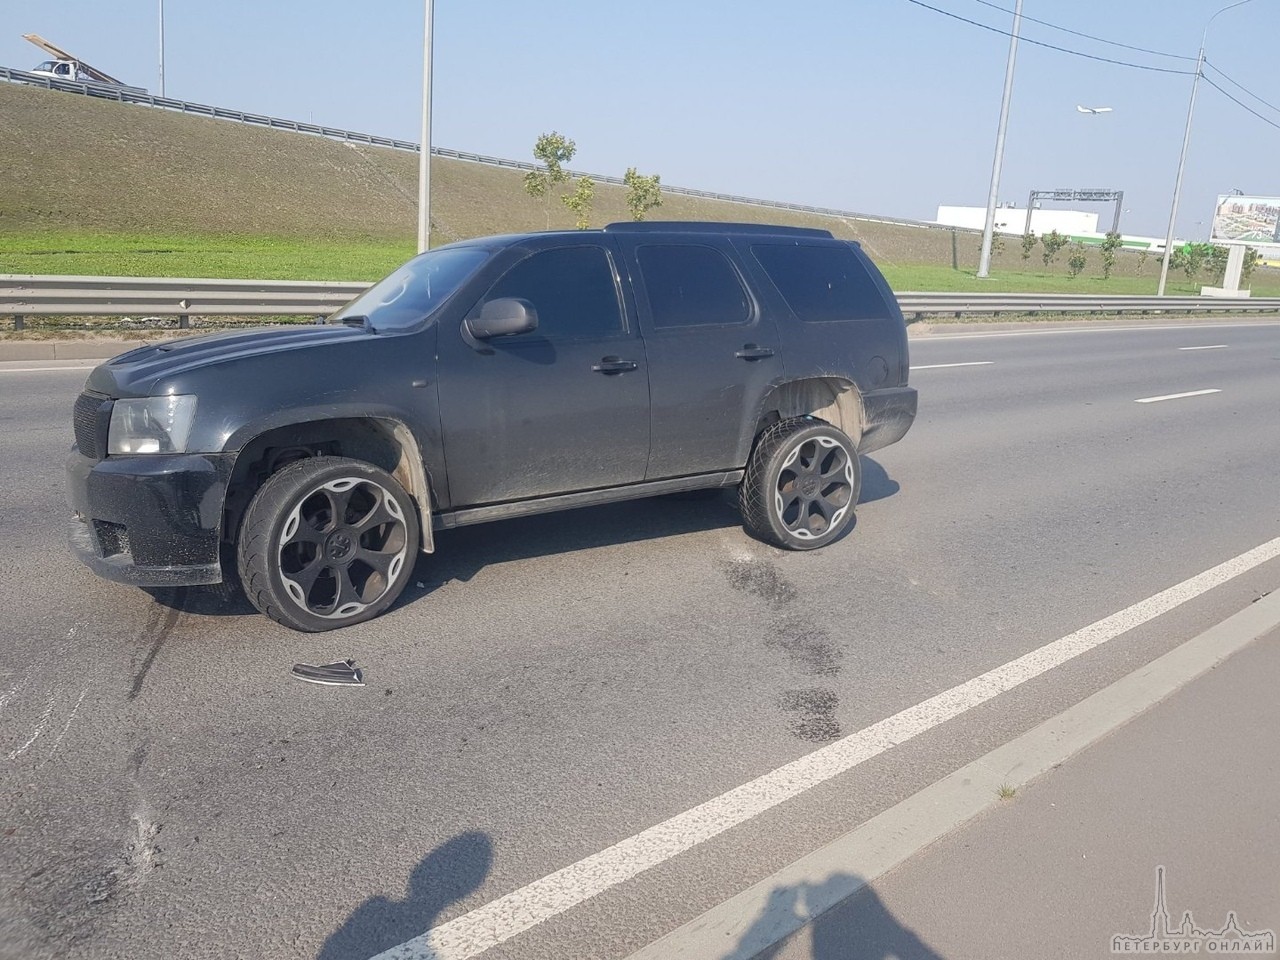 Сегодня в 11:58 на Красносельском шоссе в сторону города бензовоз подрезал Chevrolet Тахо, которым упр...